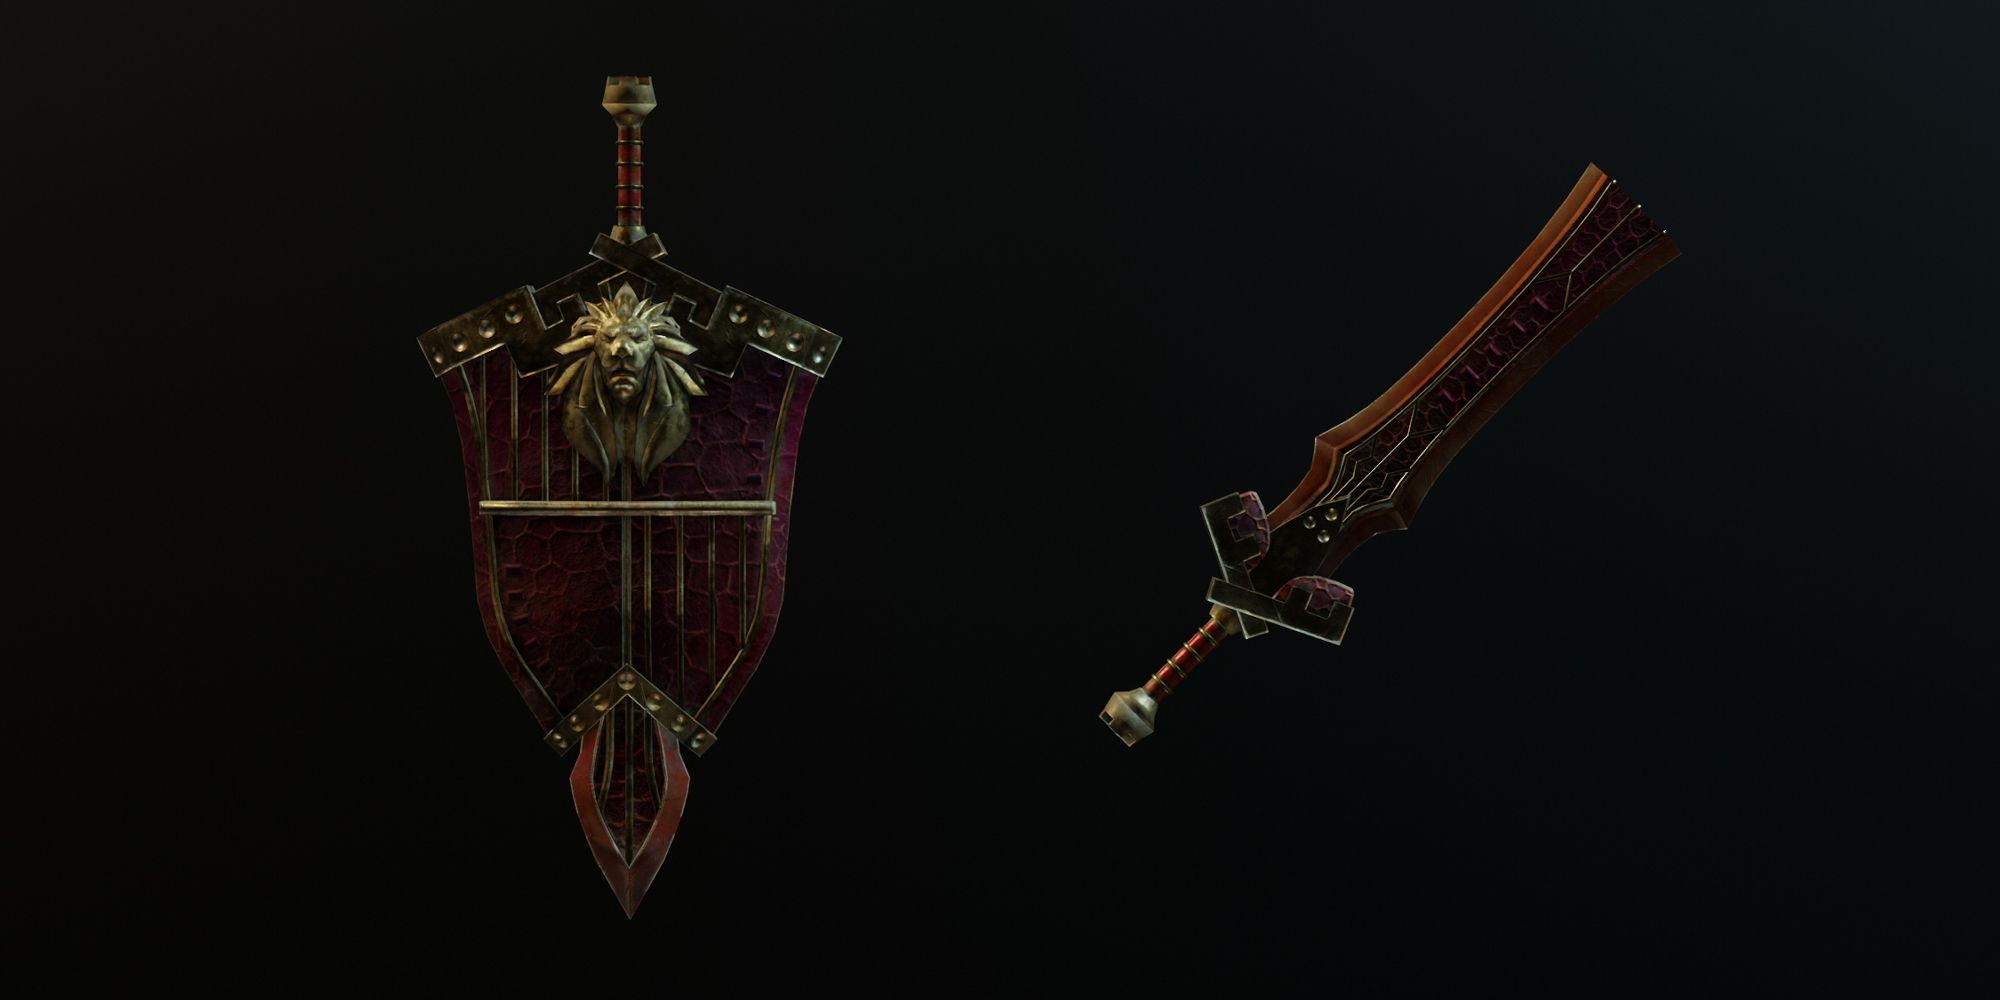 Teostra's Emblem Sword And Shield Set